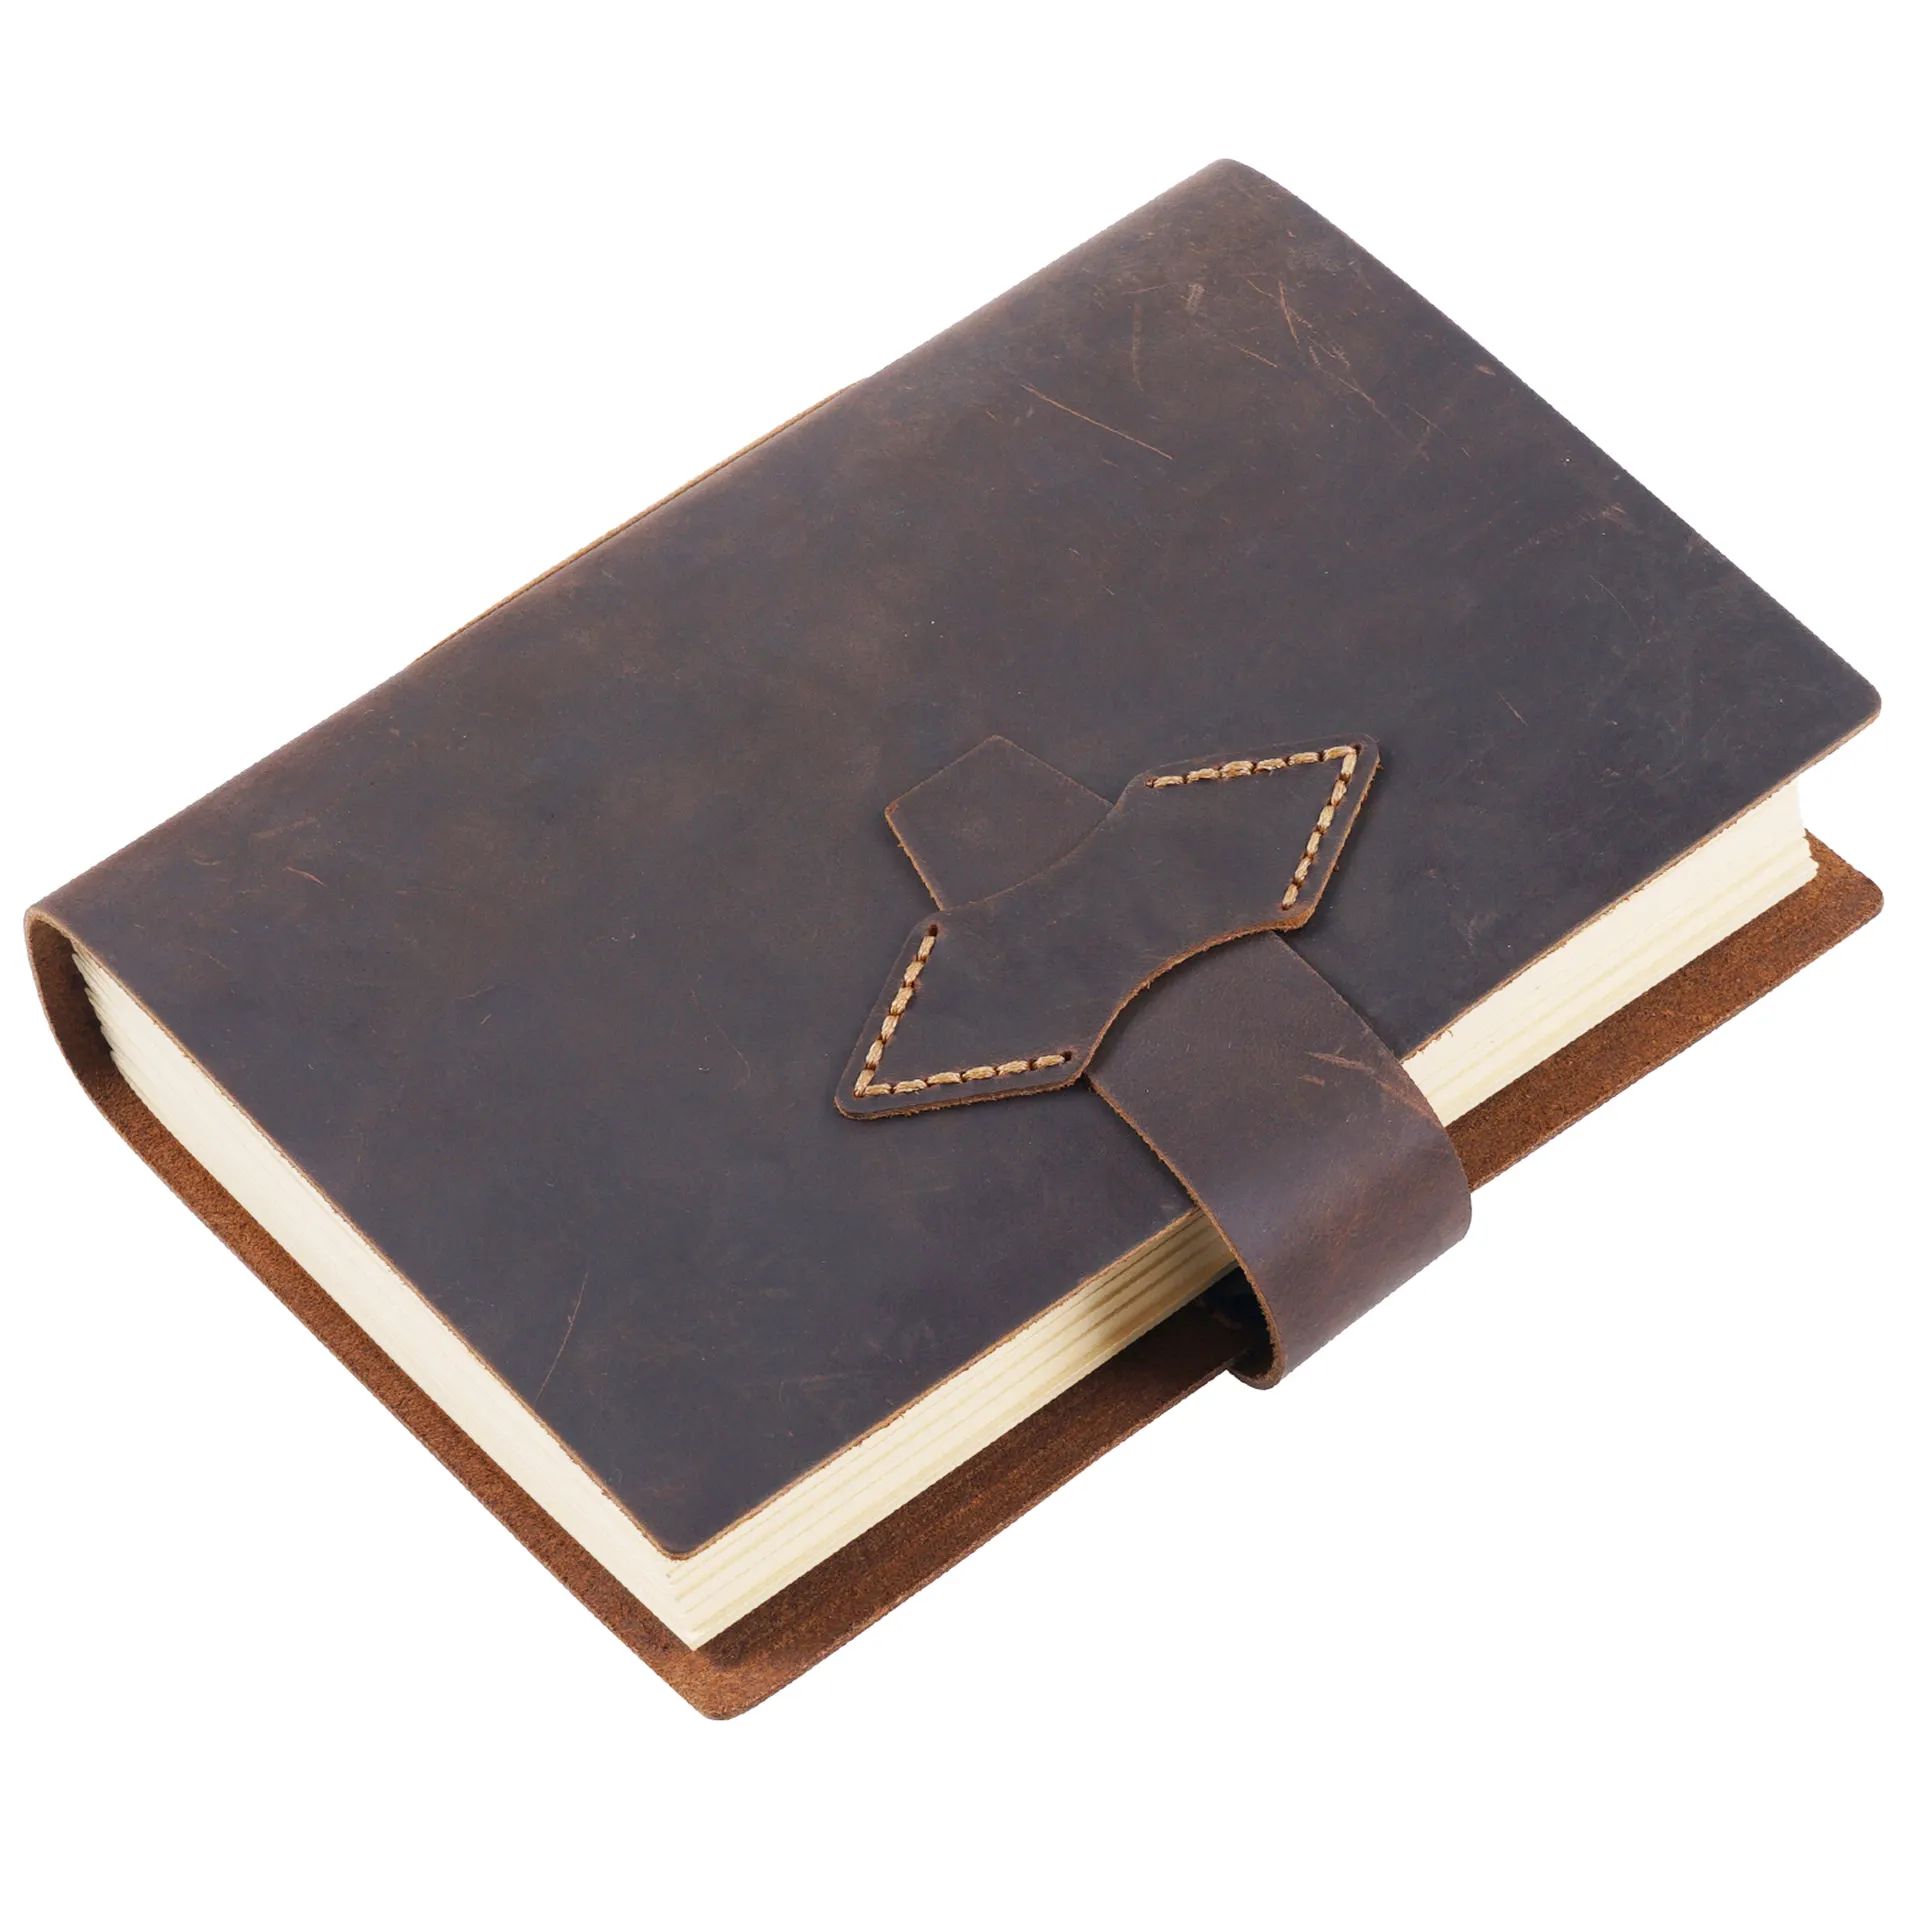 Aiguonimu kulit asli A5 ukuran buku sketsa buku harian Retro dengan pena Loop buku catatan kulit sapi netral perencana Notebook buatan tangan